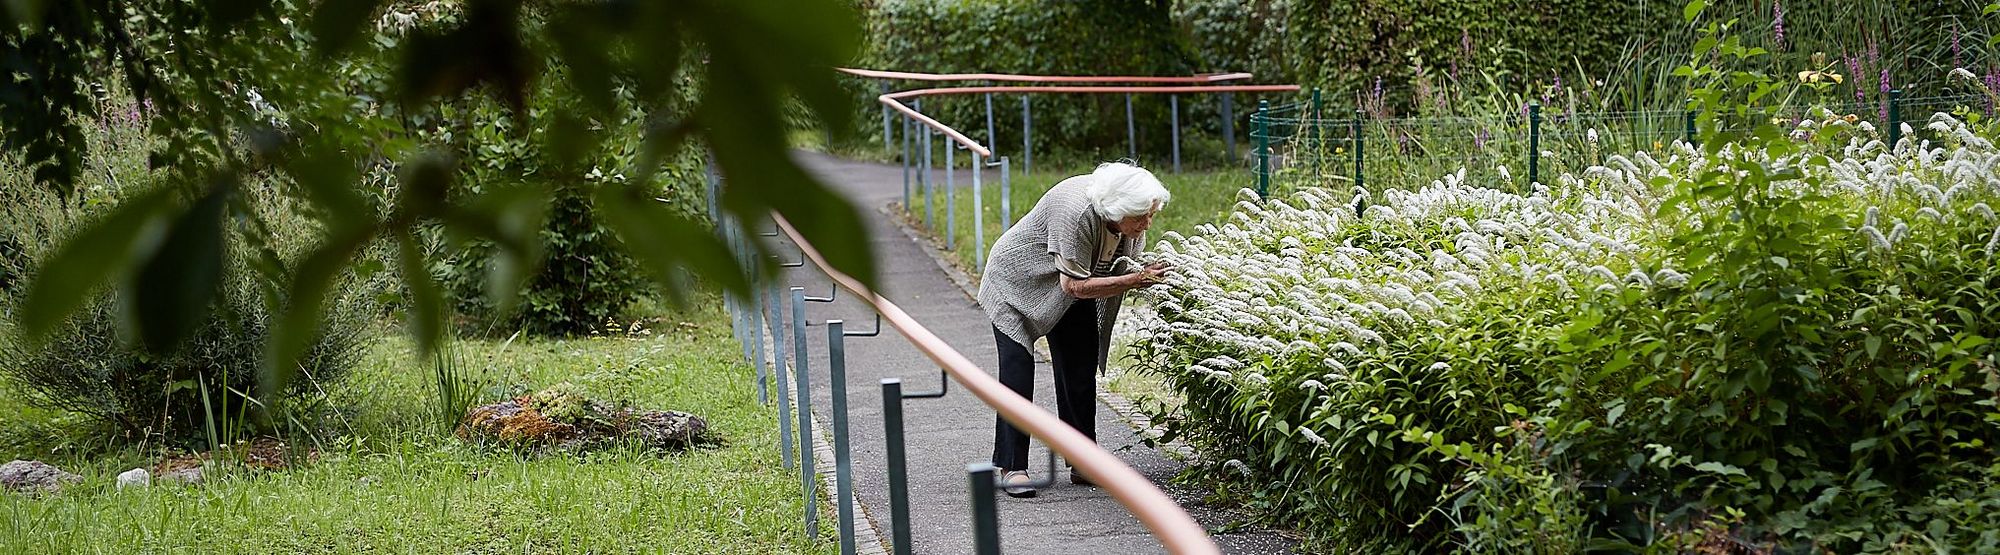 Eine Bewohnerin der Mühlehalde, auf den Wegen der Gartenanlage, beugt sich zu blühenden Pflanzen runter, um ihren Duft zu riechen.